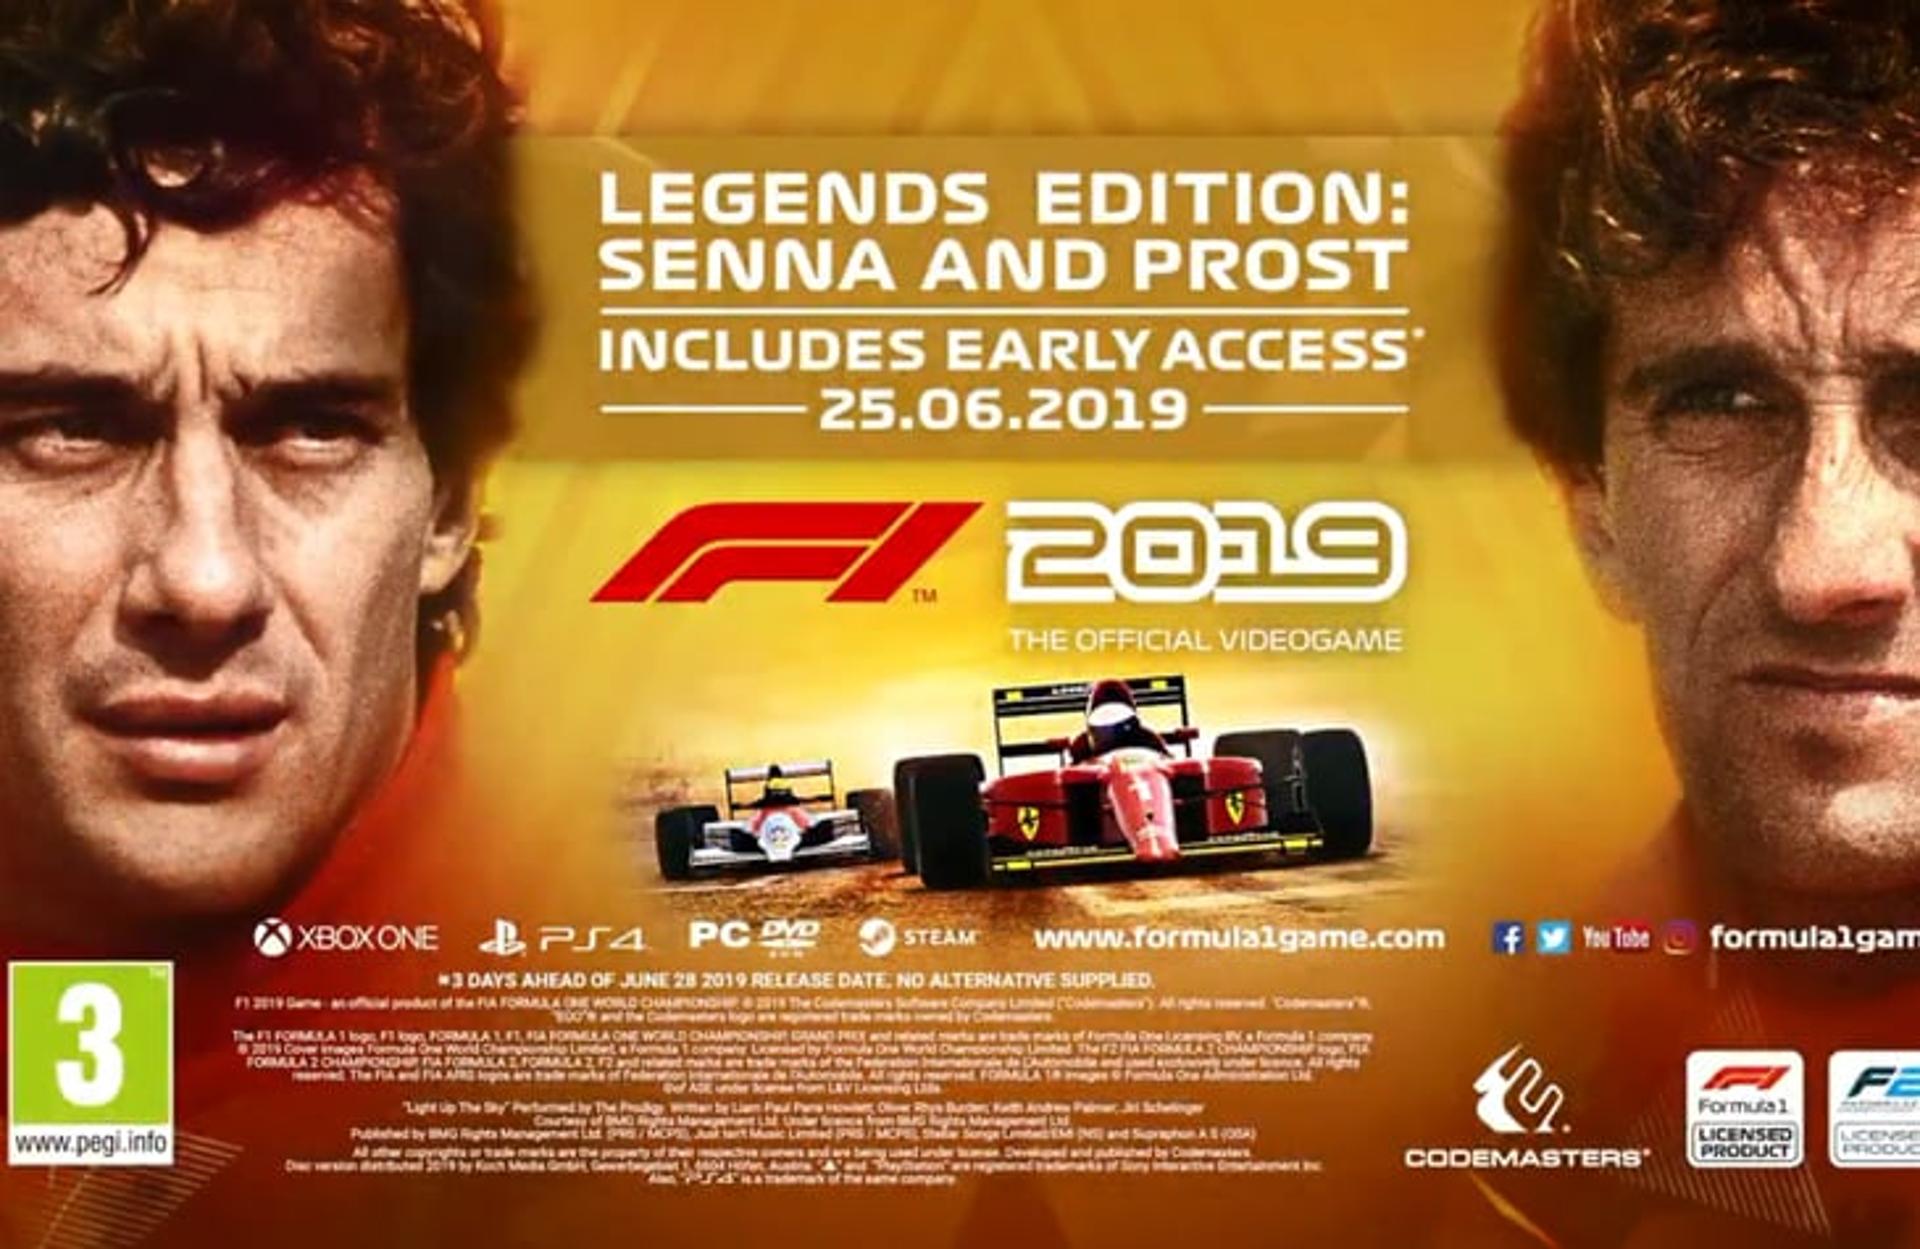 Fórmula 1 - Legends